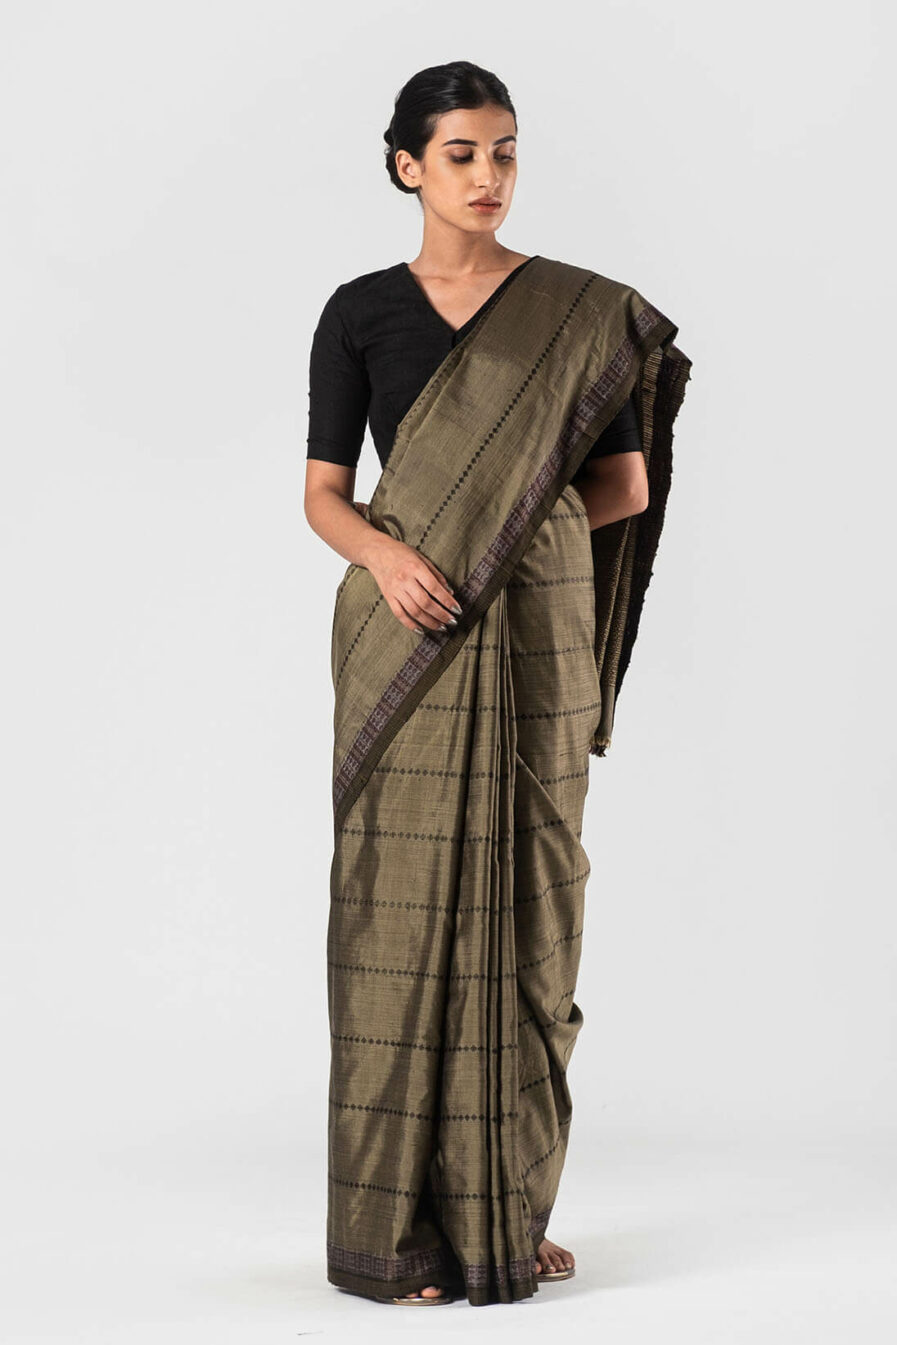 Anavila Khaki Silk jacquard sari